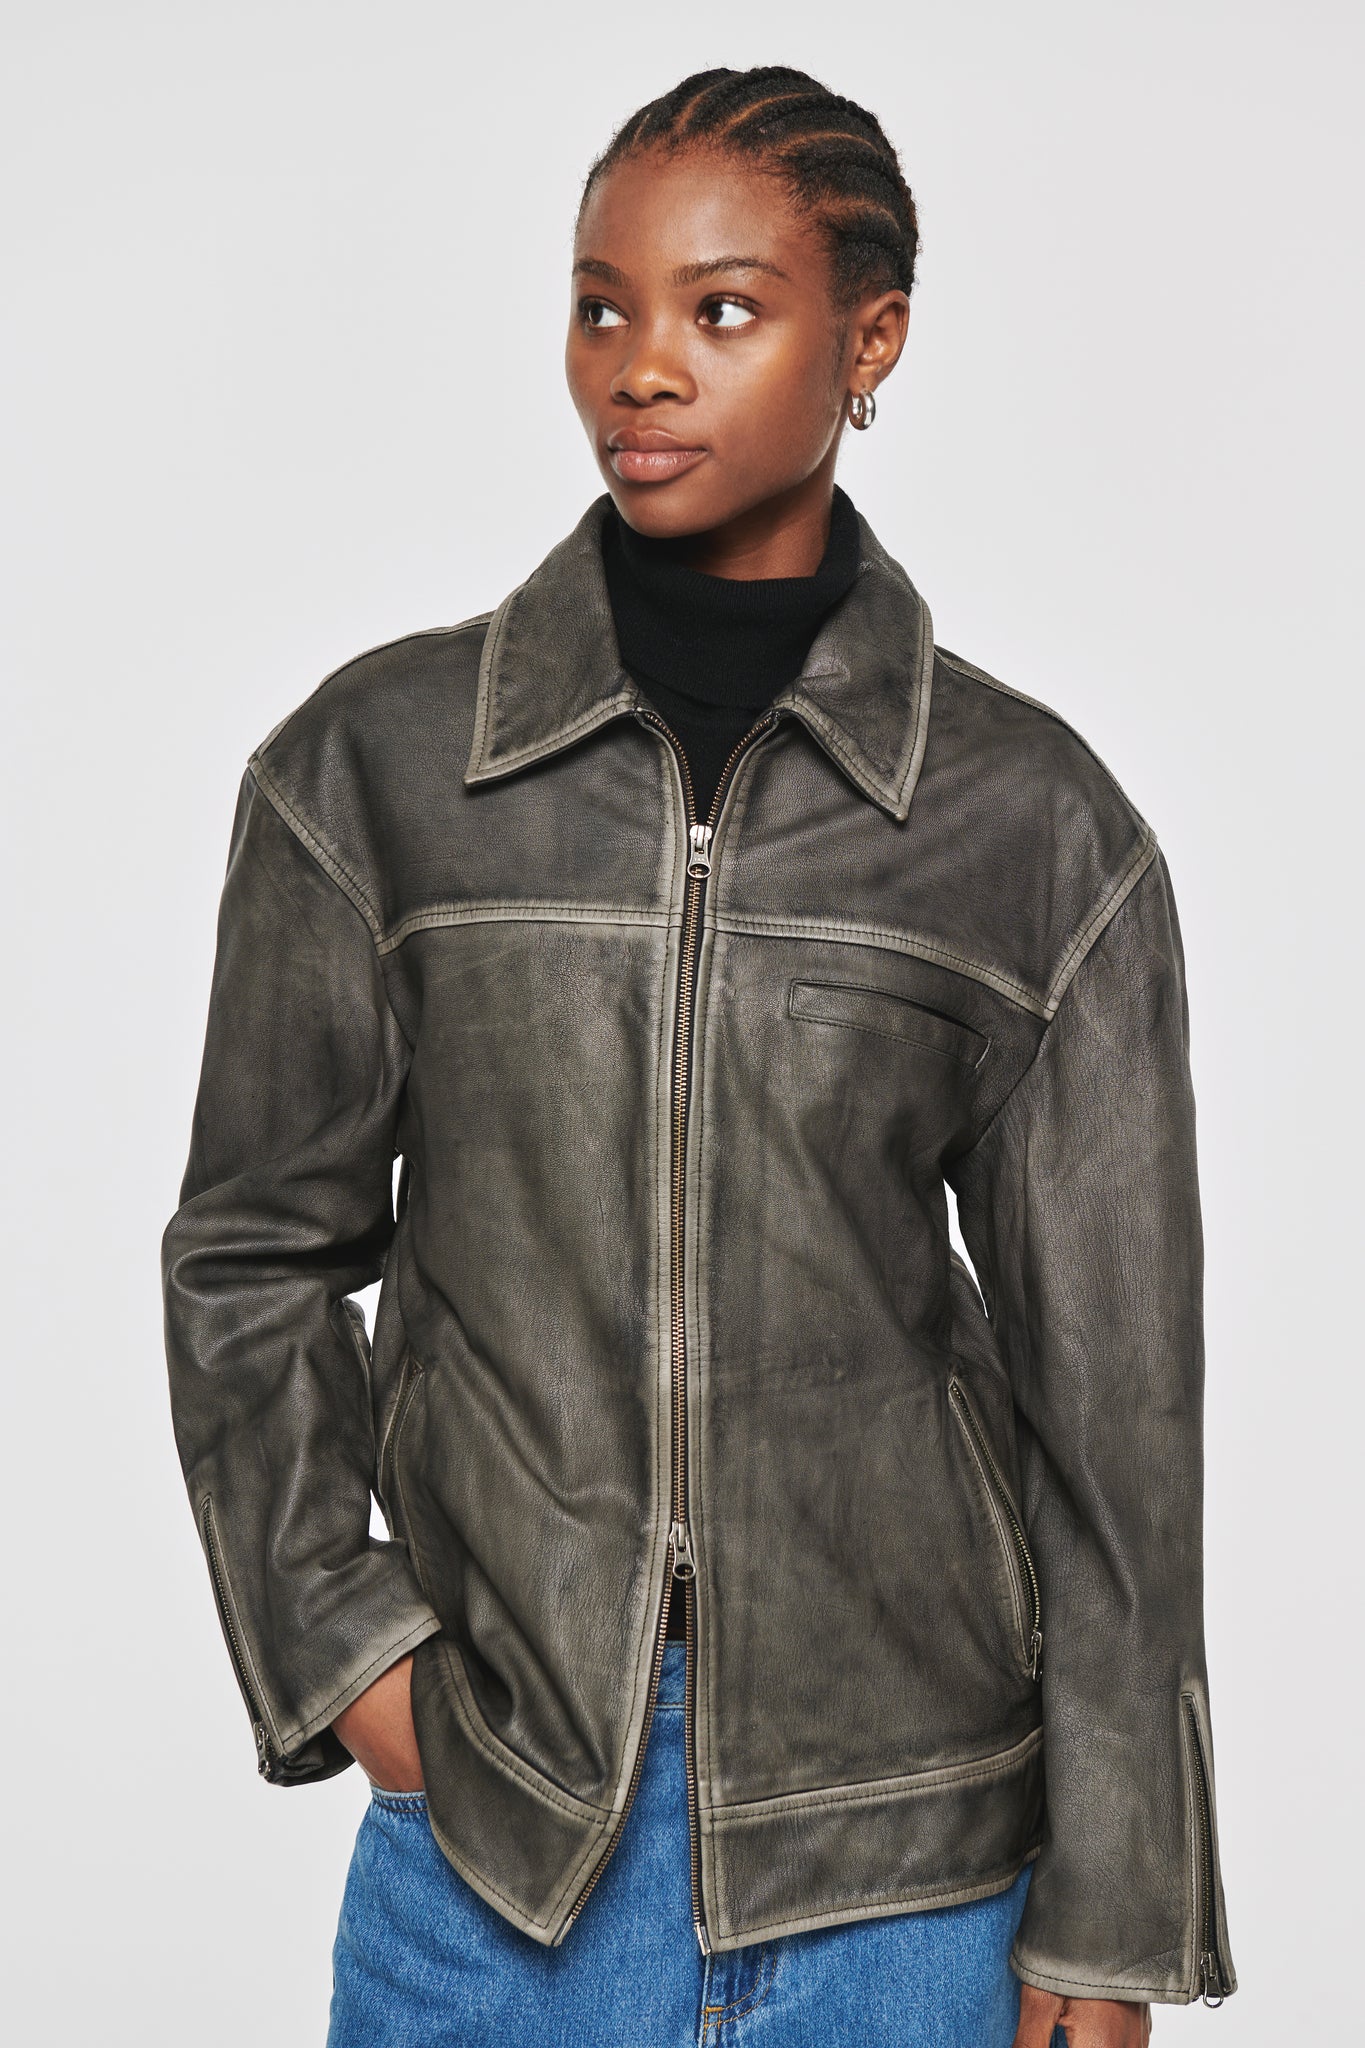 Leroy Leather Jacket